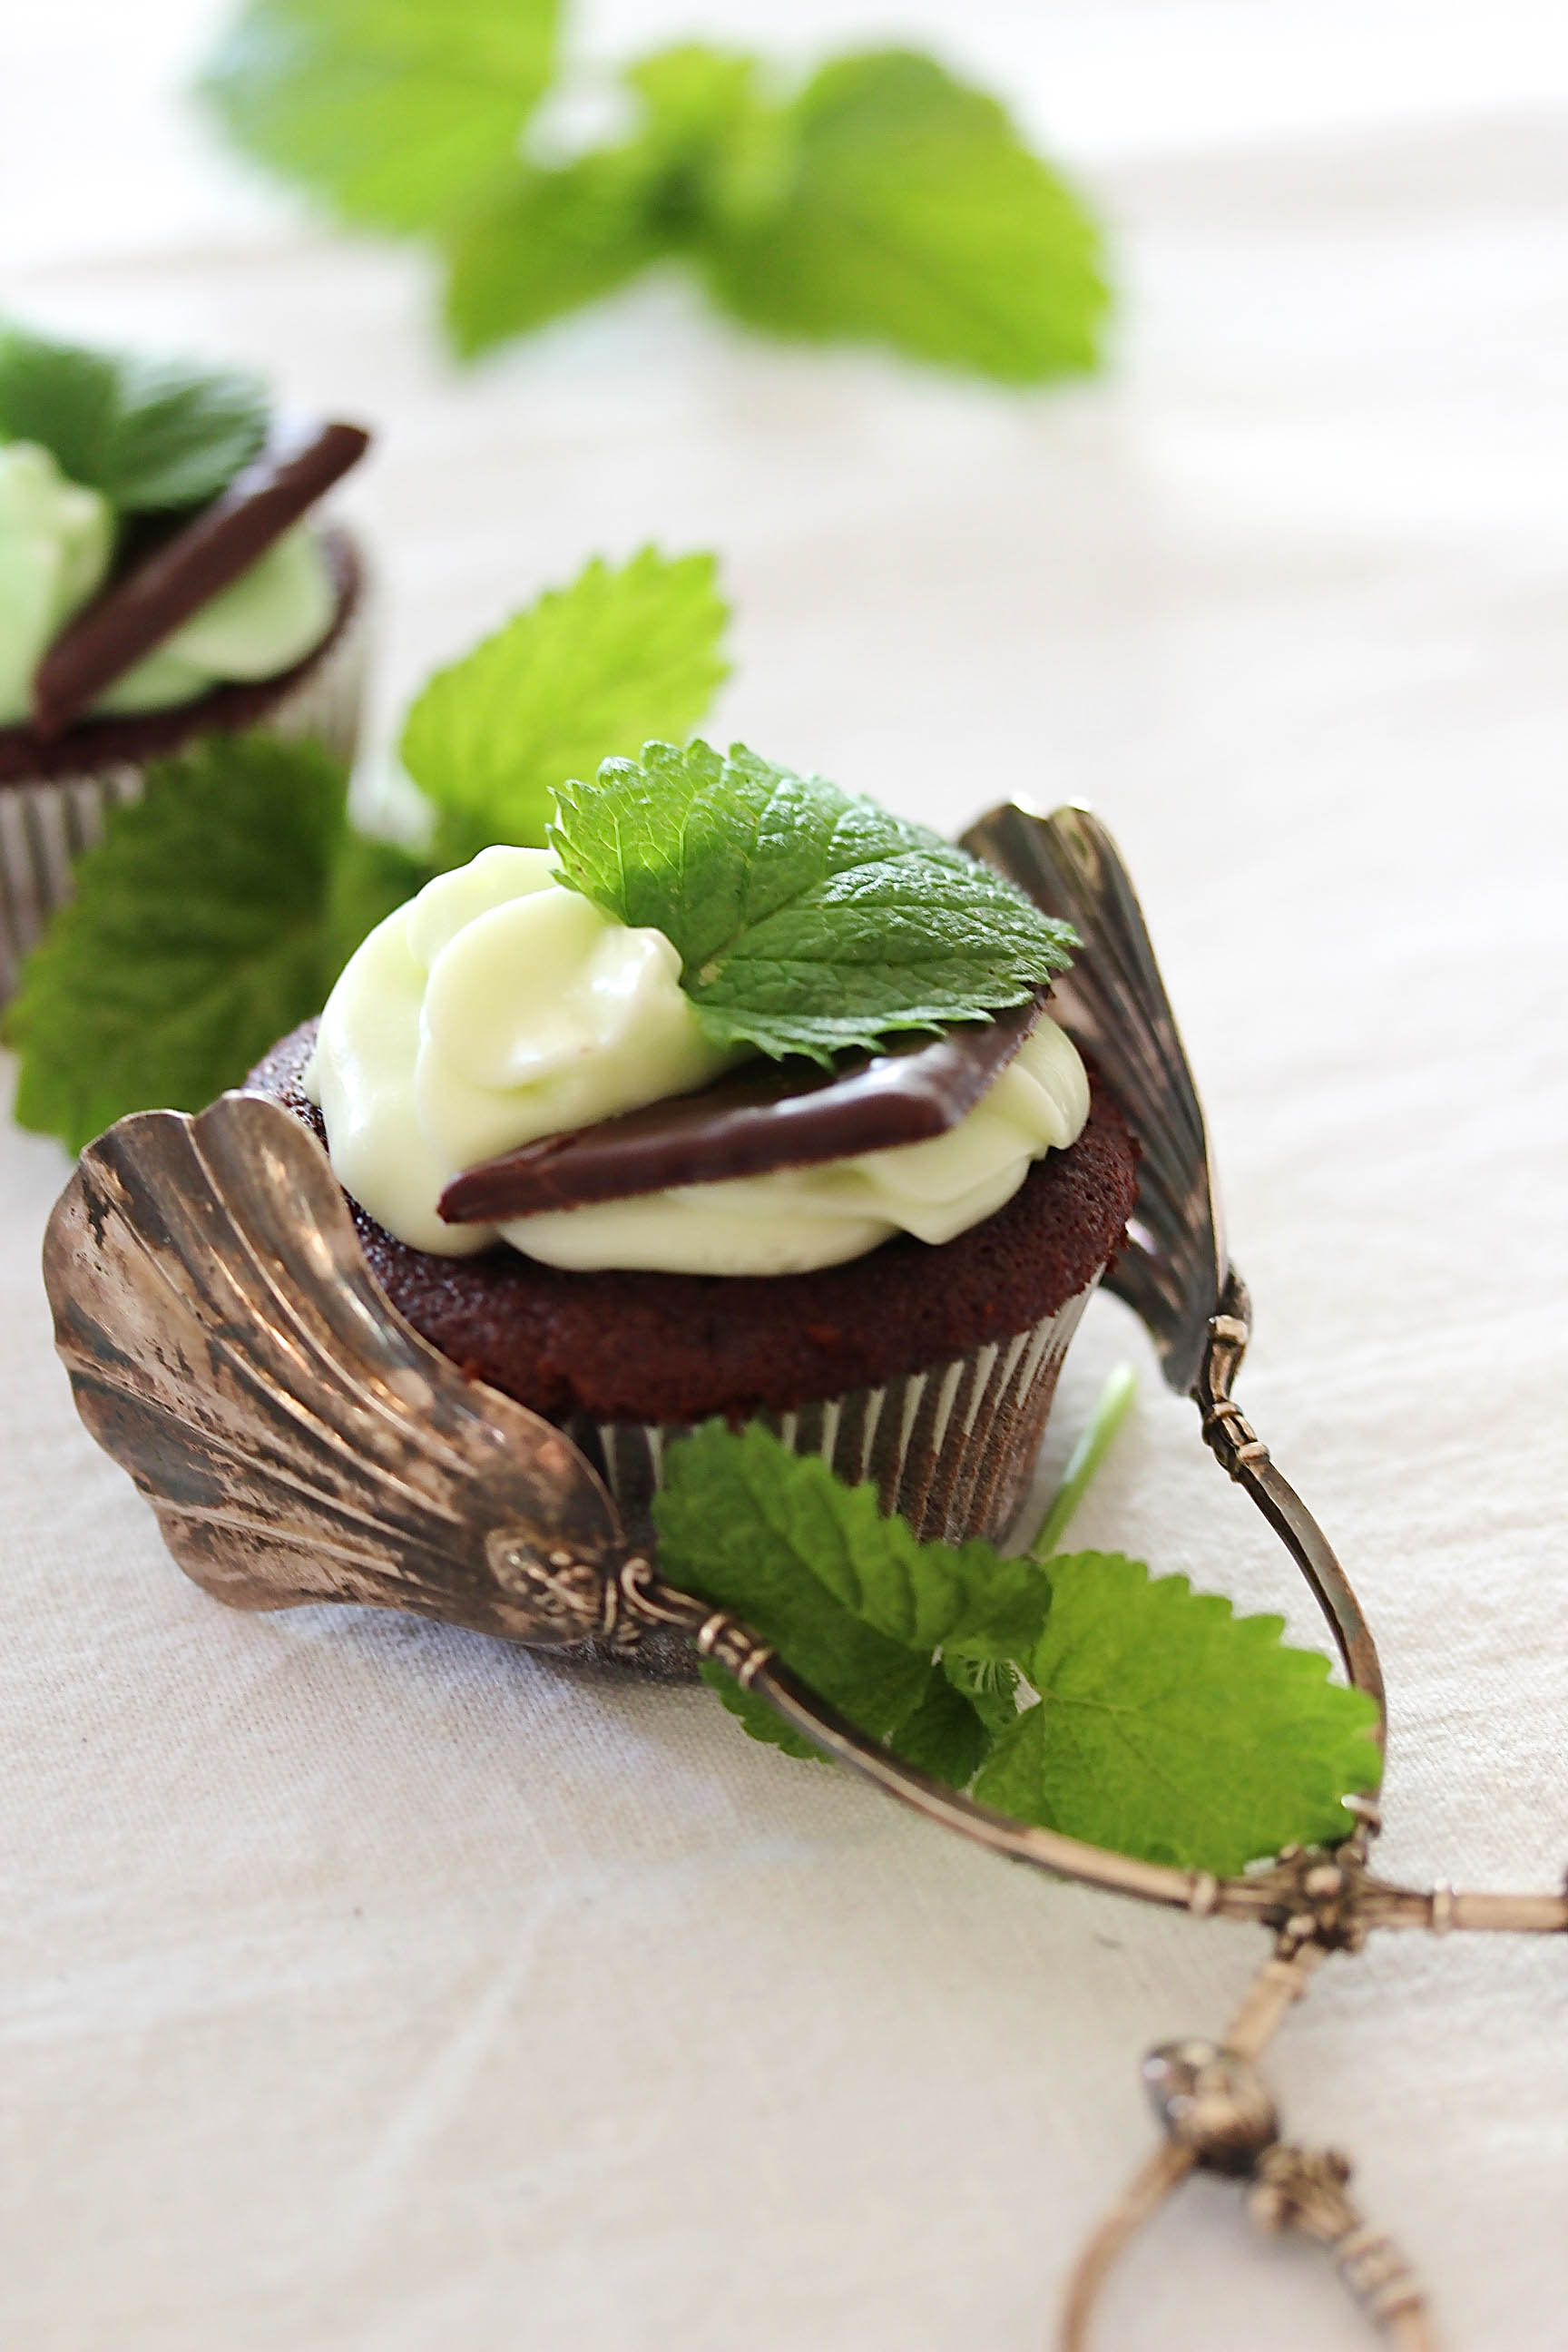 After Eight Cupcakes Rezept mit Minz Schokolade backen Backlog Foodfotografie recipe mint cupcakes #aftereight #cupcakes #chocolate #minze #mintcupcakes | Emma´s Lieblingsstücke